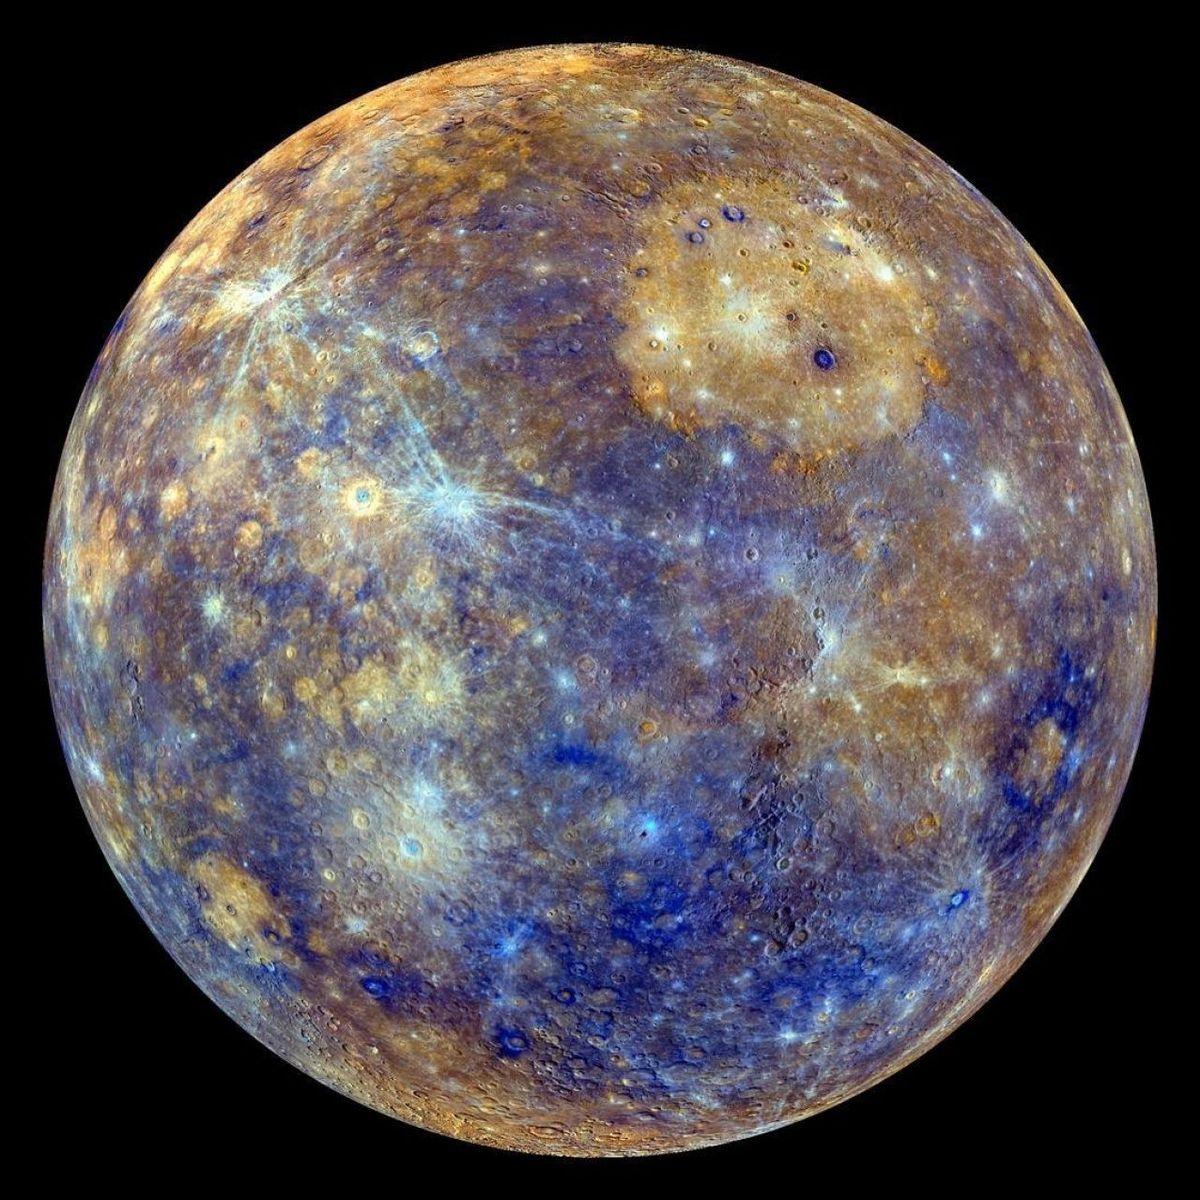 Tu profe de Naturales te engañó: el planeta más cercano a la Tierra es  Mercurio